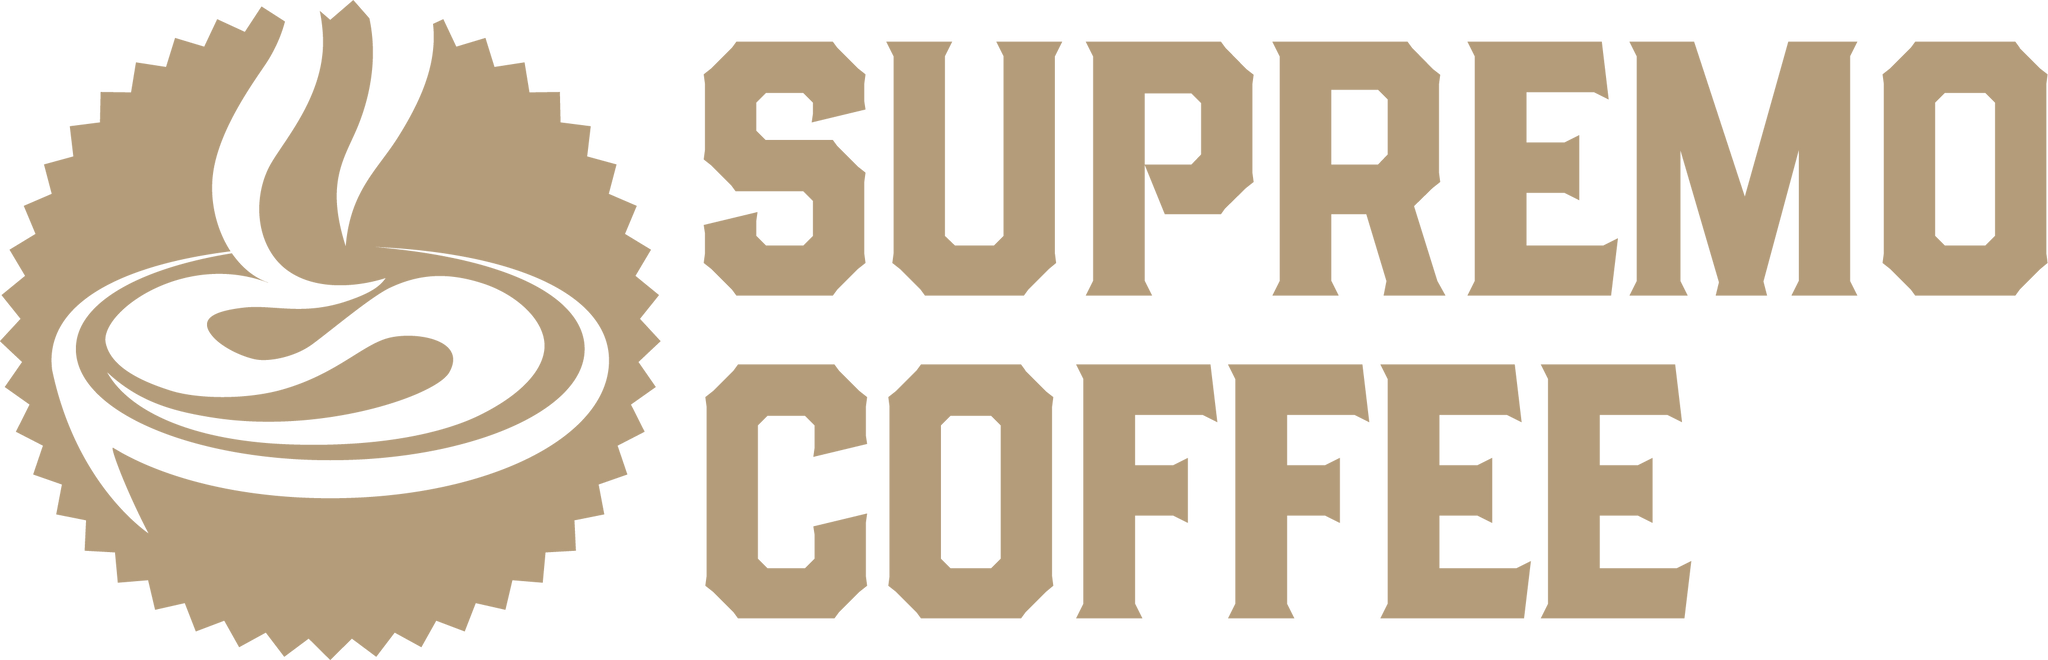 supremo.coffee